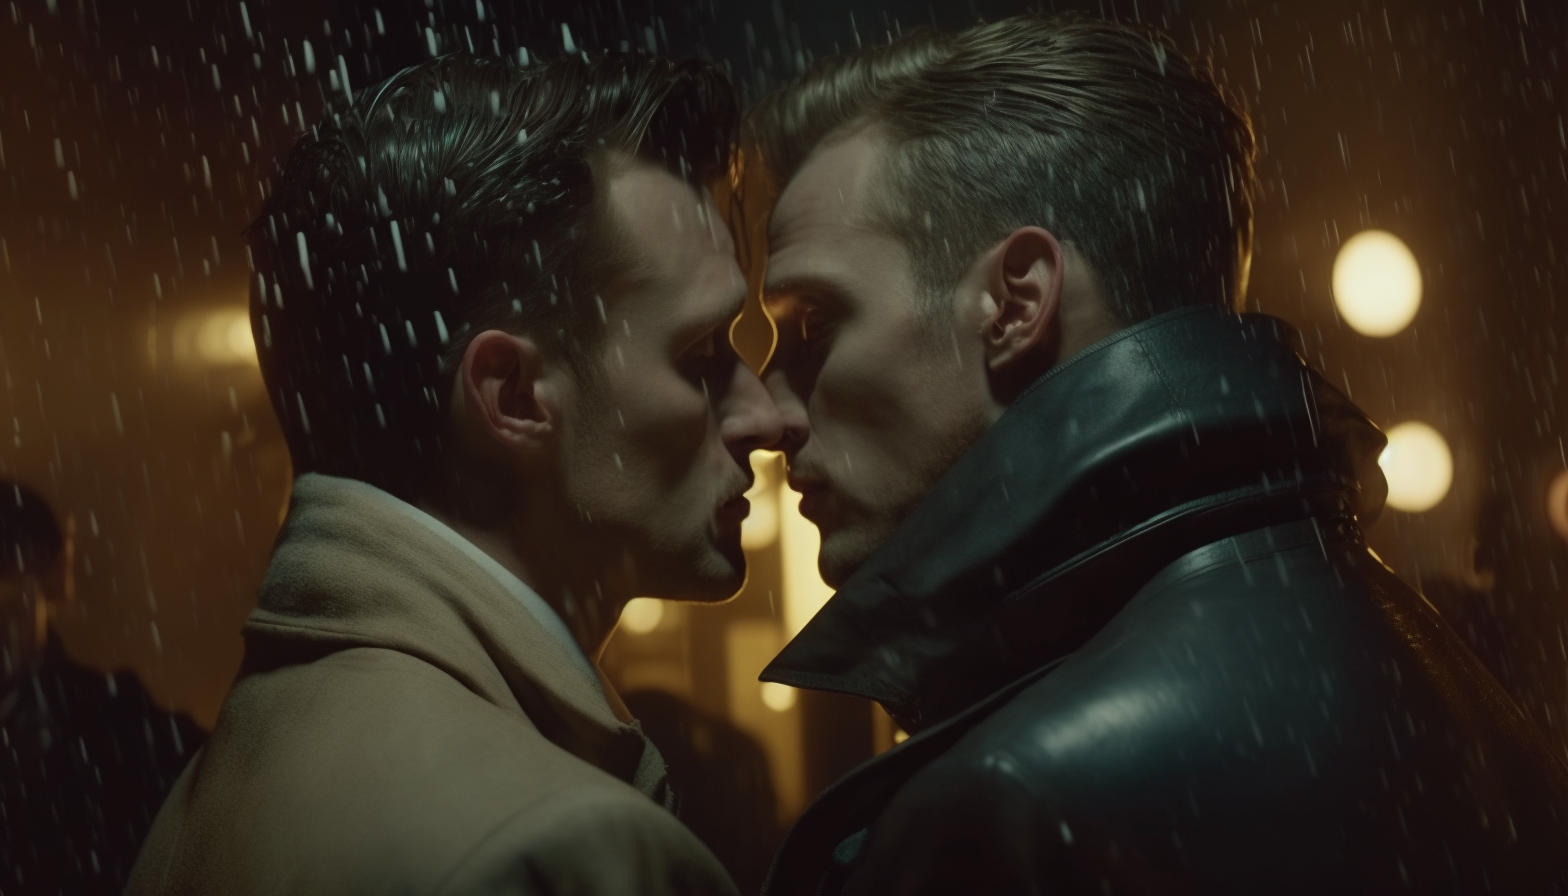 Чувственный гей-клип: поцелуи под луной и под дождём